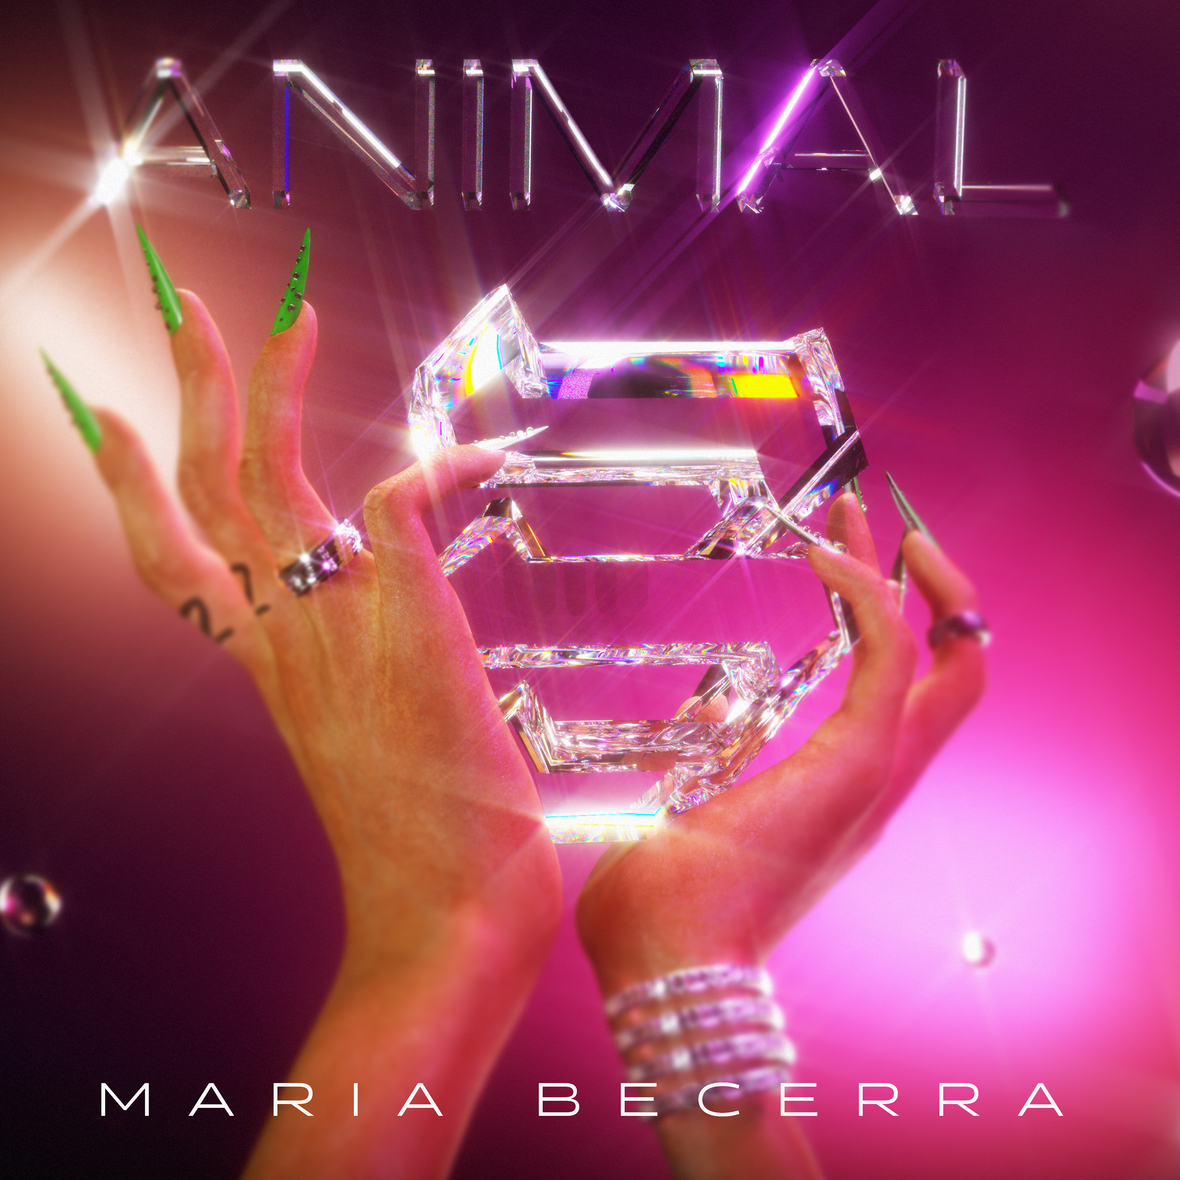 MARIA BECERRA estrena su álbum “Animal”